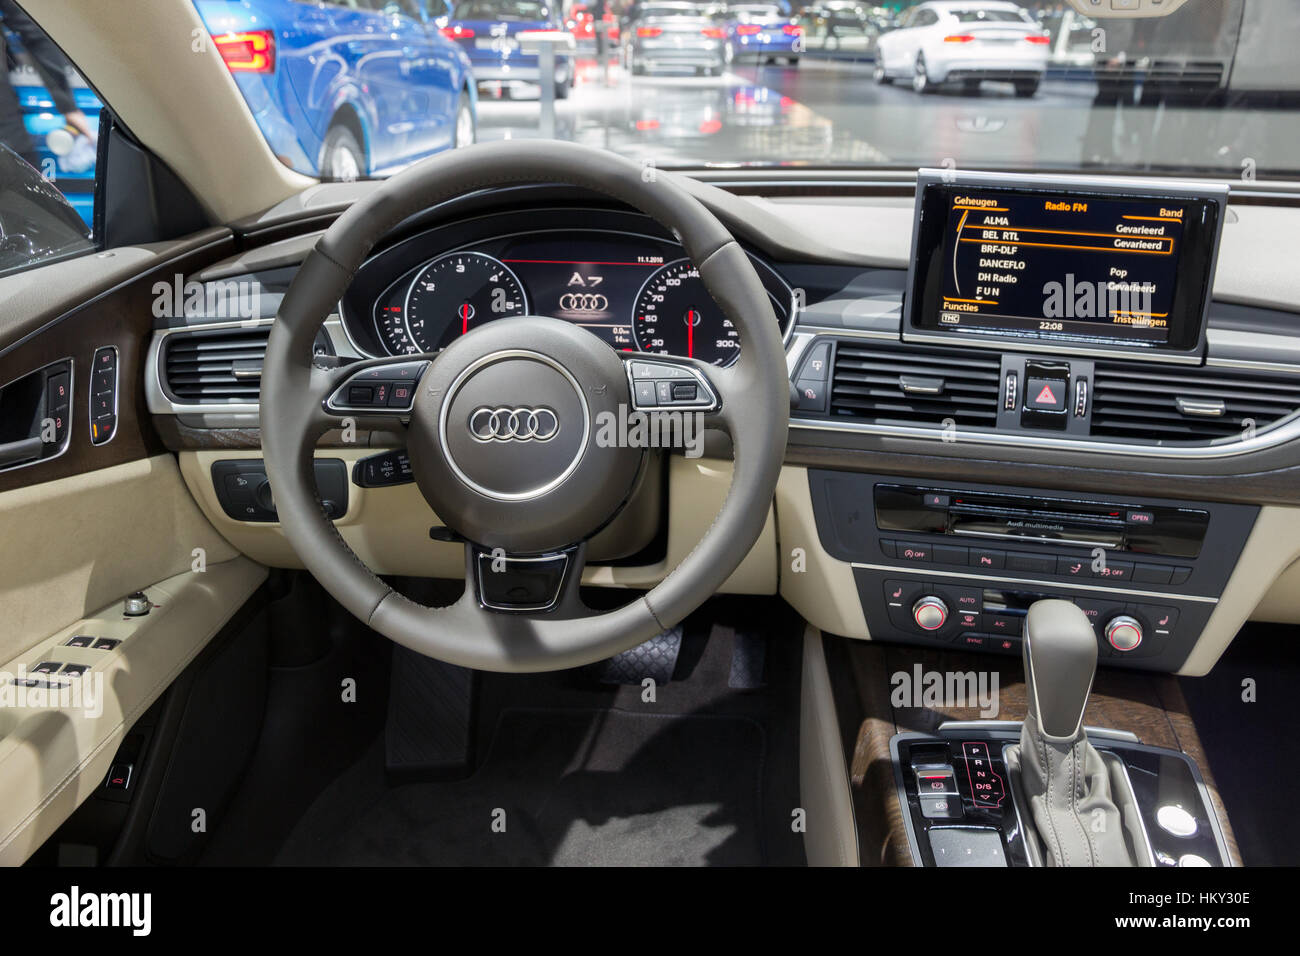 Audi interieur Banque de photographies et d'images à haute résolution -  Alamy